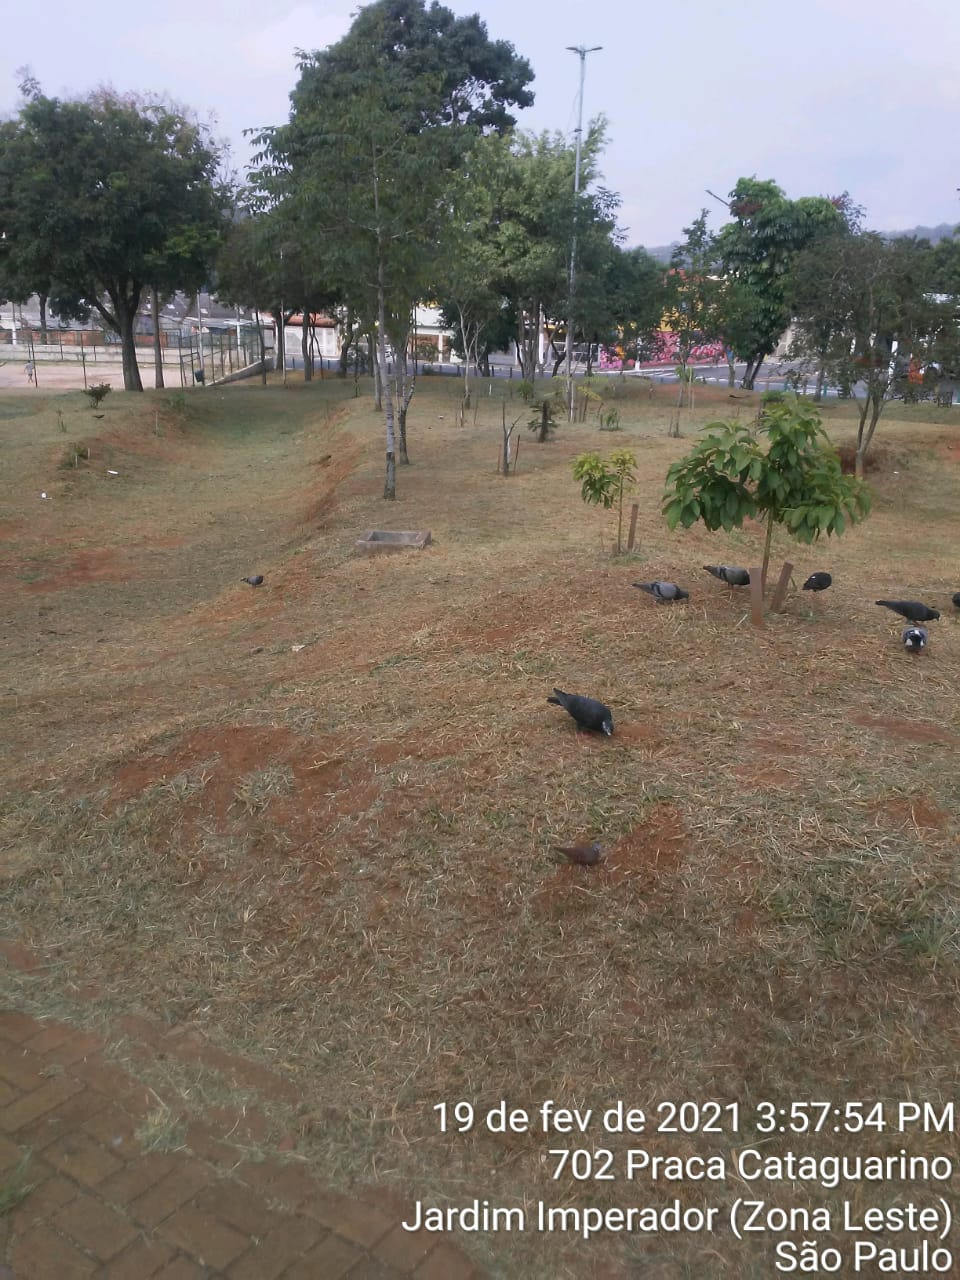 Grama aparada em uma praça, com algumas árvores de vários portes no terreno. Pombos procuram alimento, no chão. 